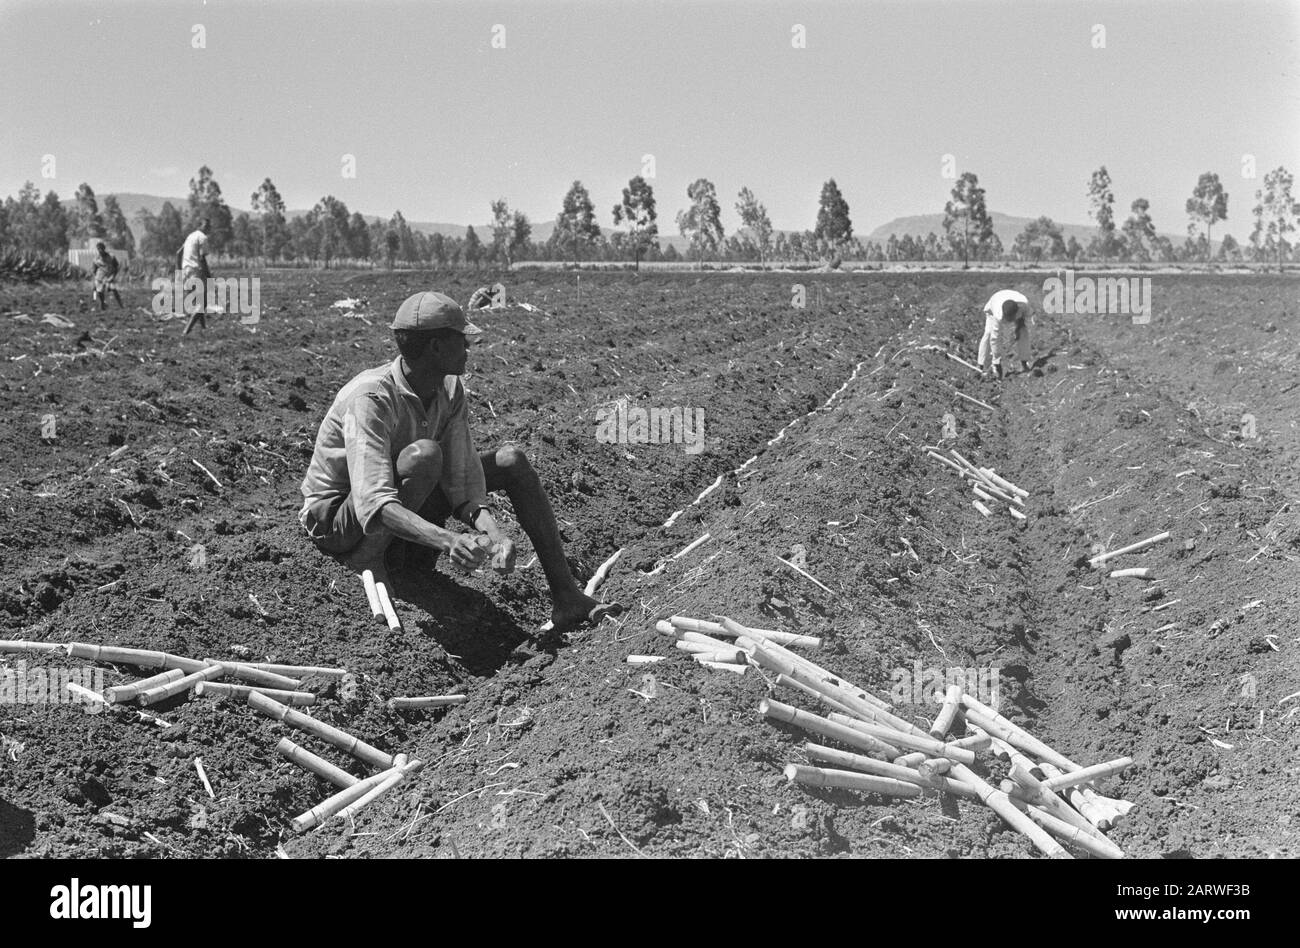 Plantation de canne à sucre de la HVA à Wonji (Ethiopie). Travailleurs au travail sur la plantation de canne à sucre Date : 27 janvier 1969 lieu : Ethiopie, Wonji mots clés : travailleurs, plantations Banque D'Images